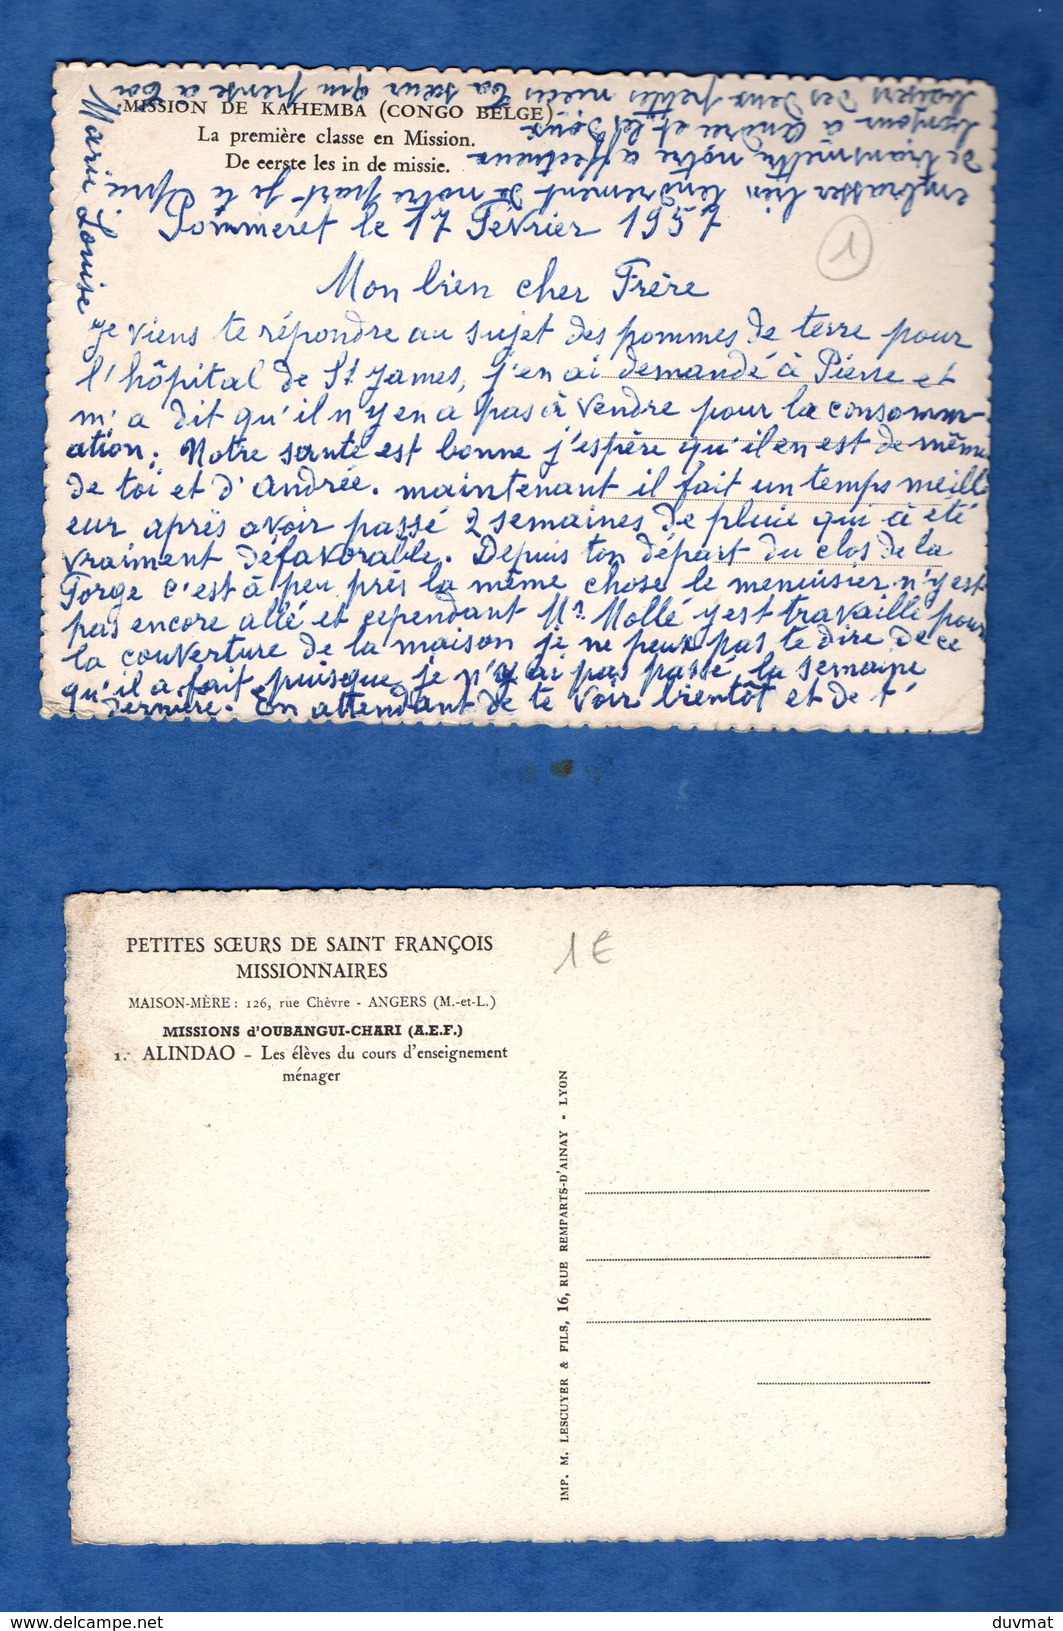 Republique Centrafricaine Oubangui Chari Alindoa Et Congo Kahemba Lot De 4 Cartes Postales ( Format 10,5 X 15 ) - Central African Republic